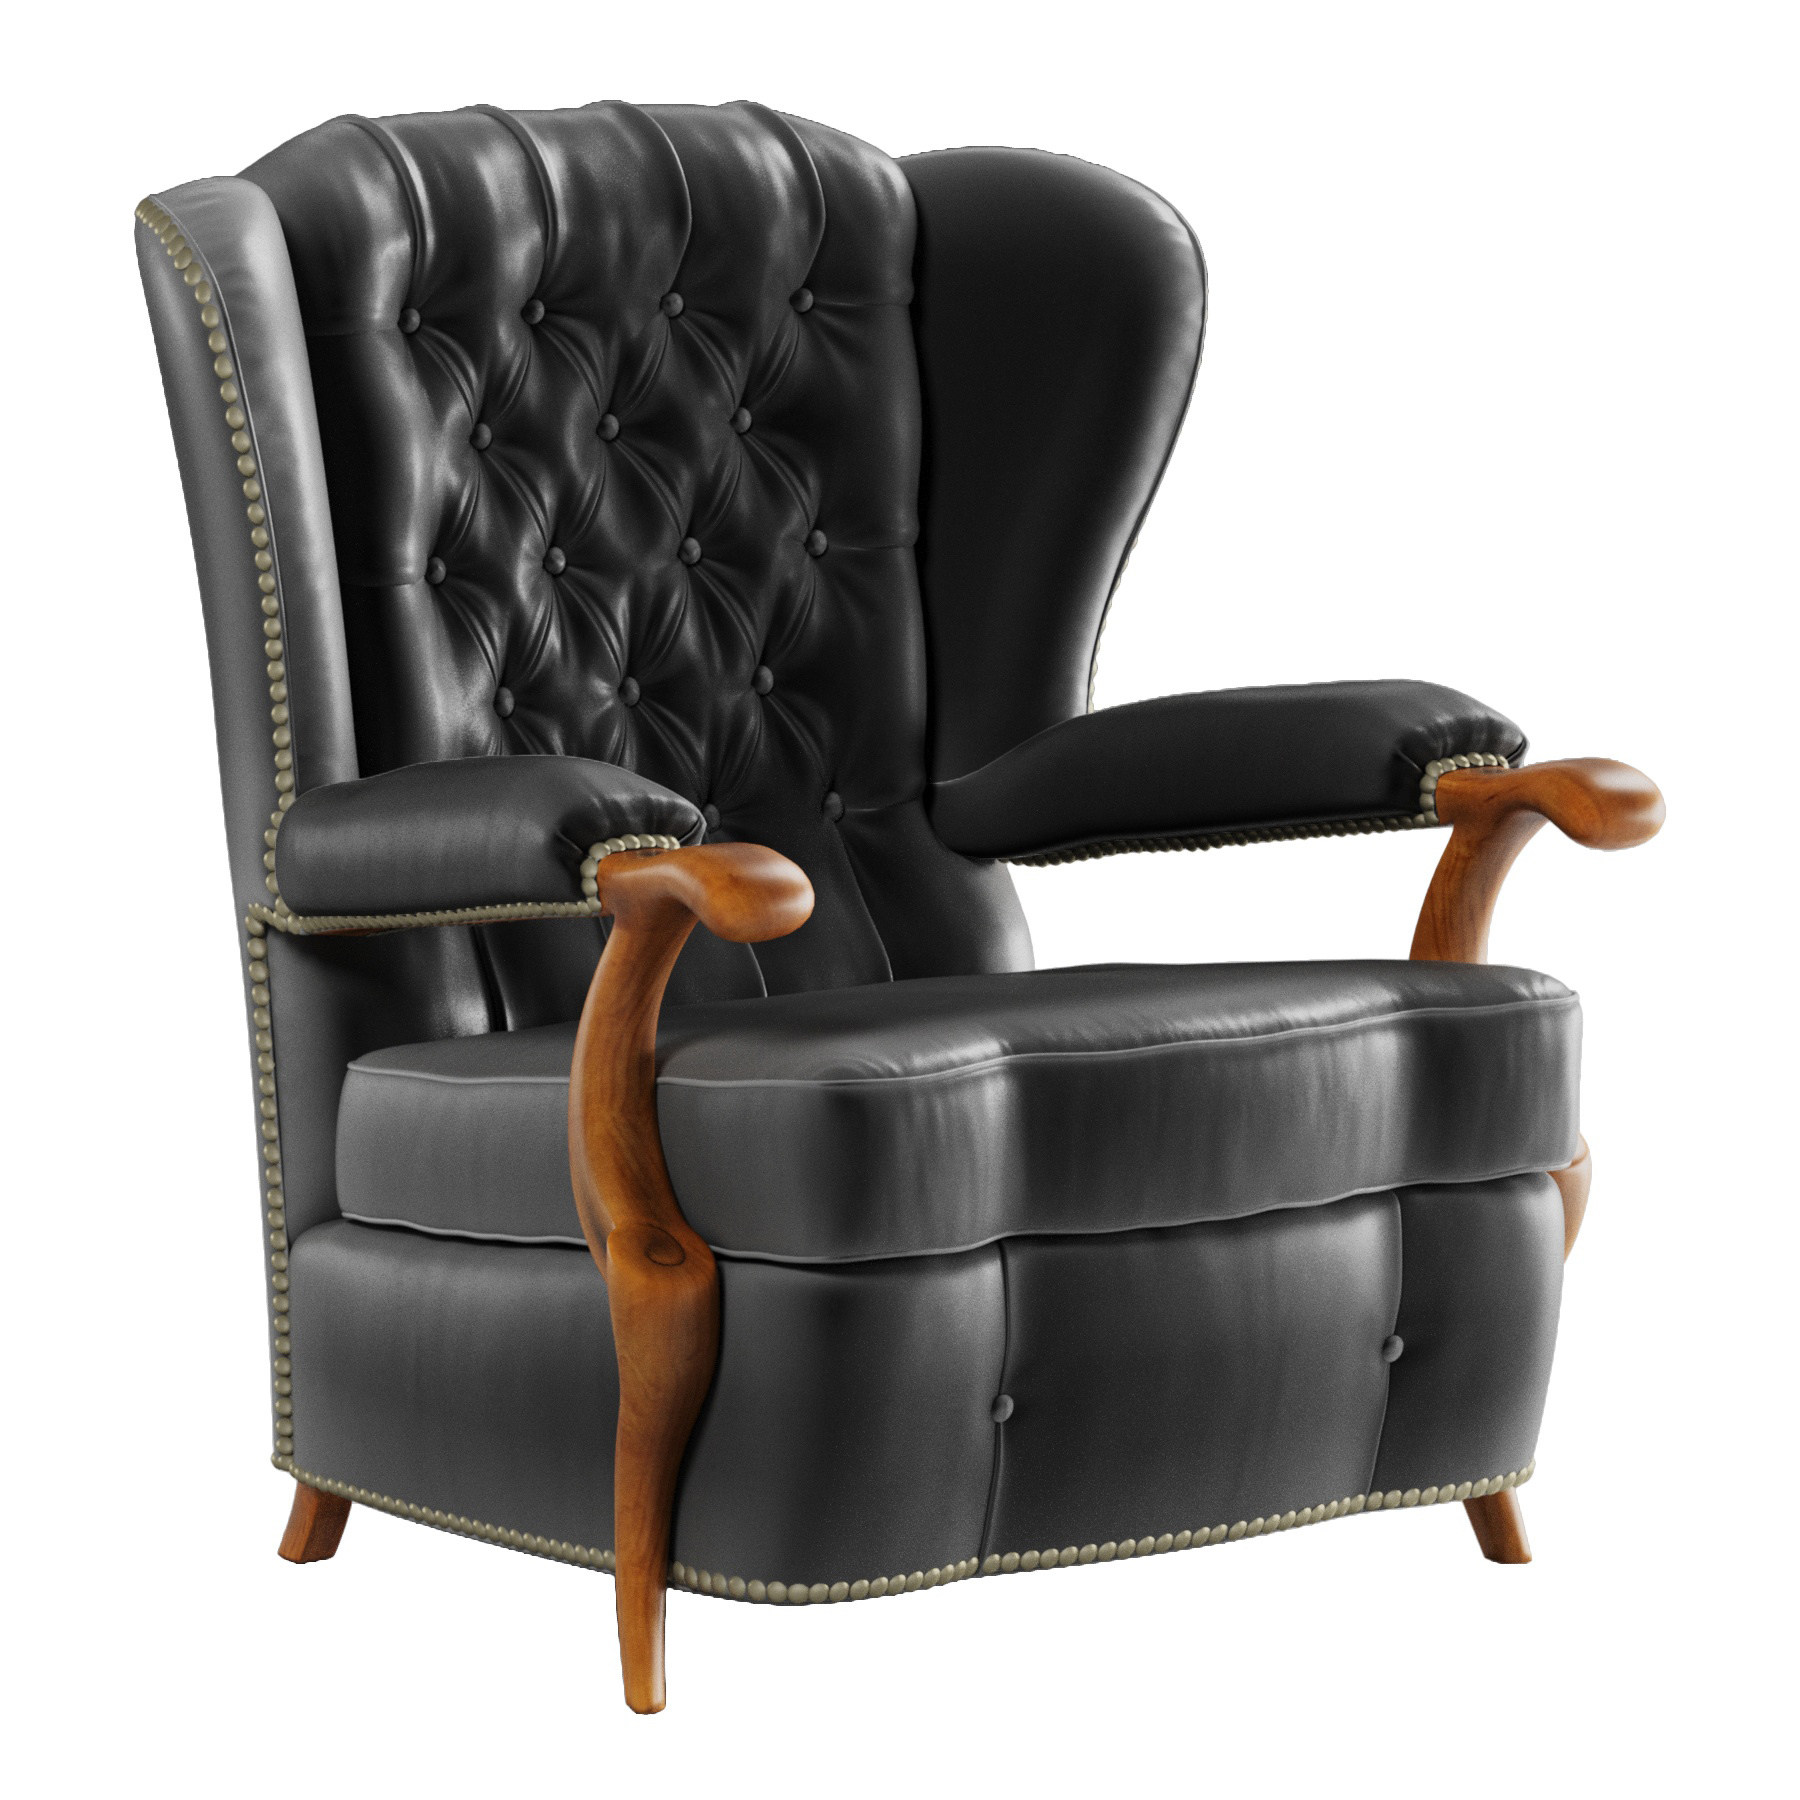 黑色皮革切斯特菲尔德俱乐部椅子3d模型下载